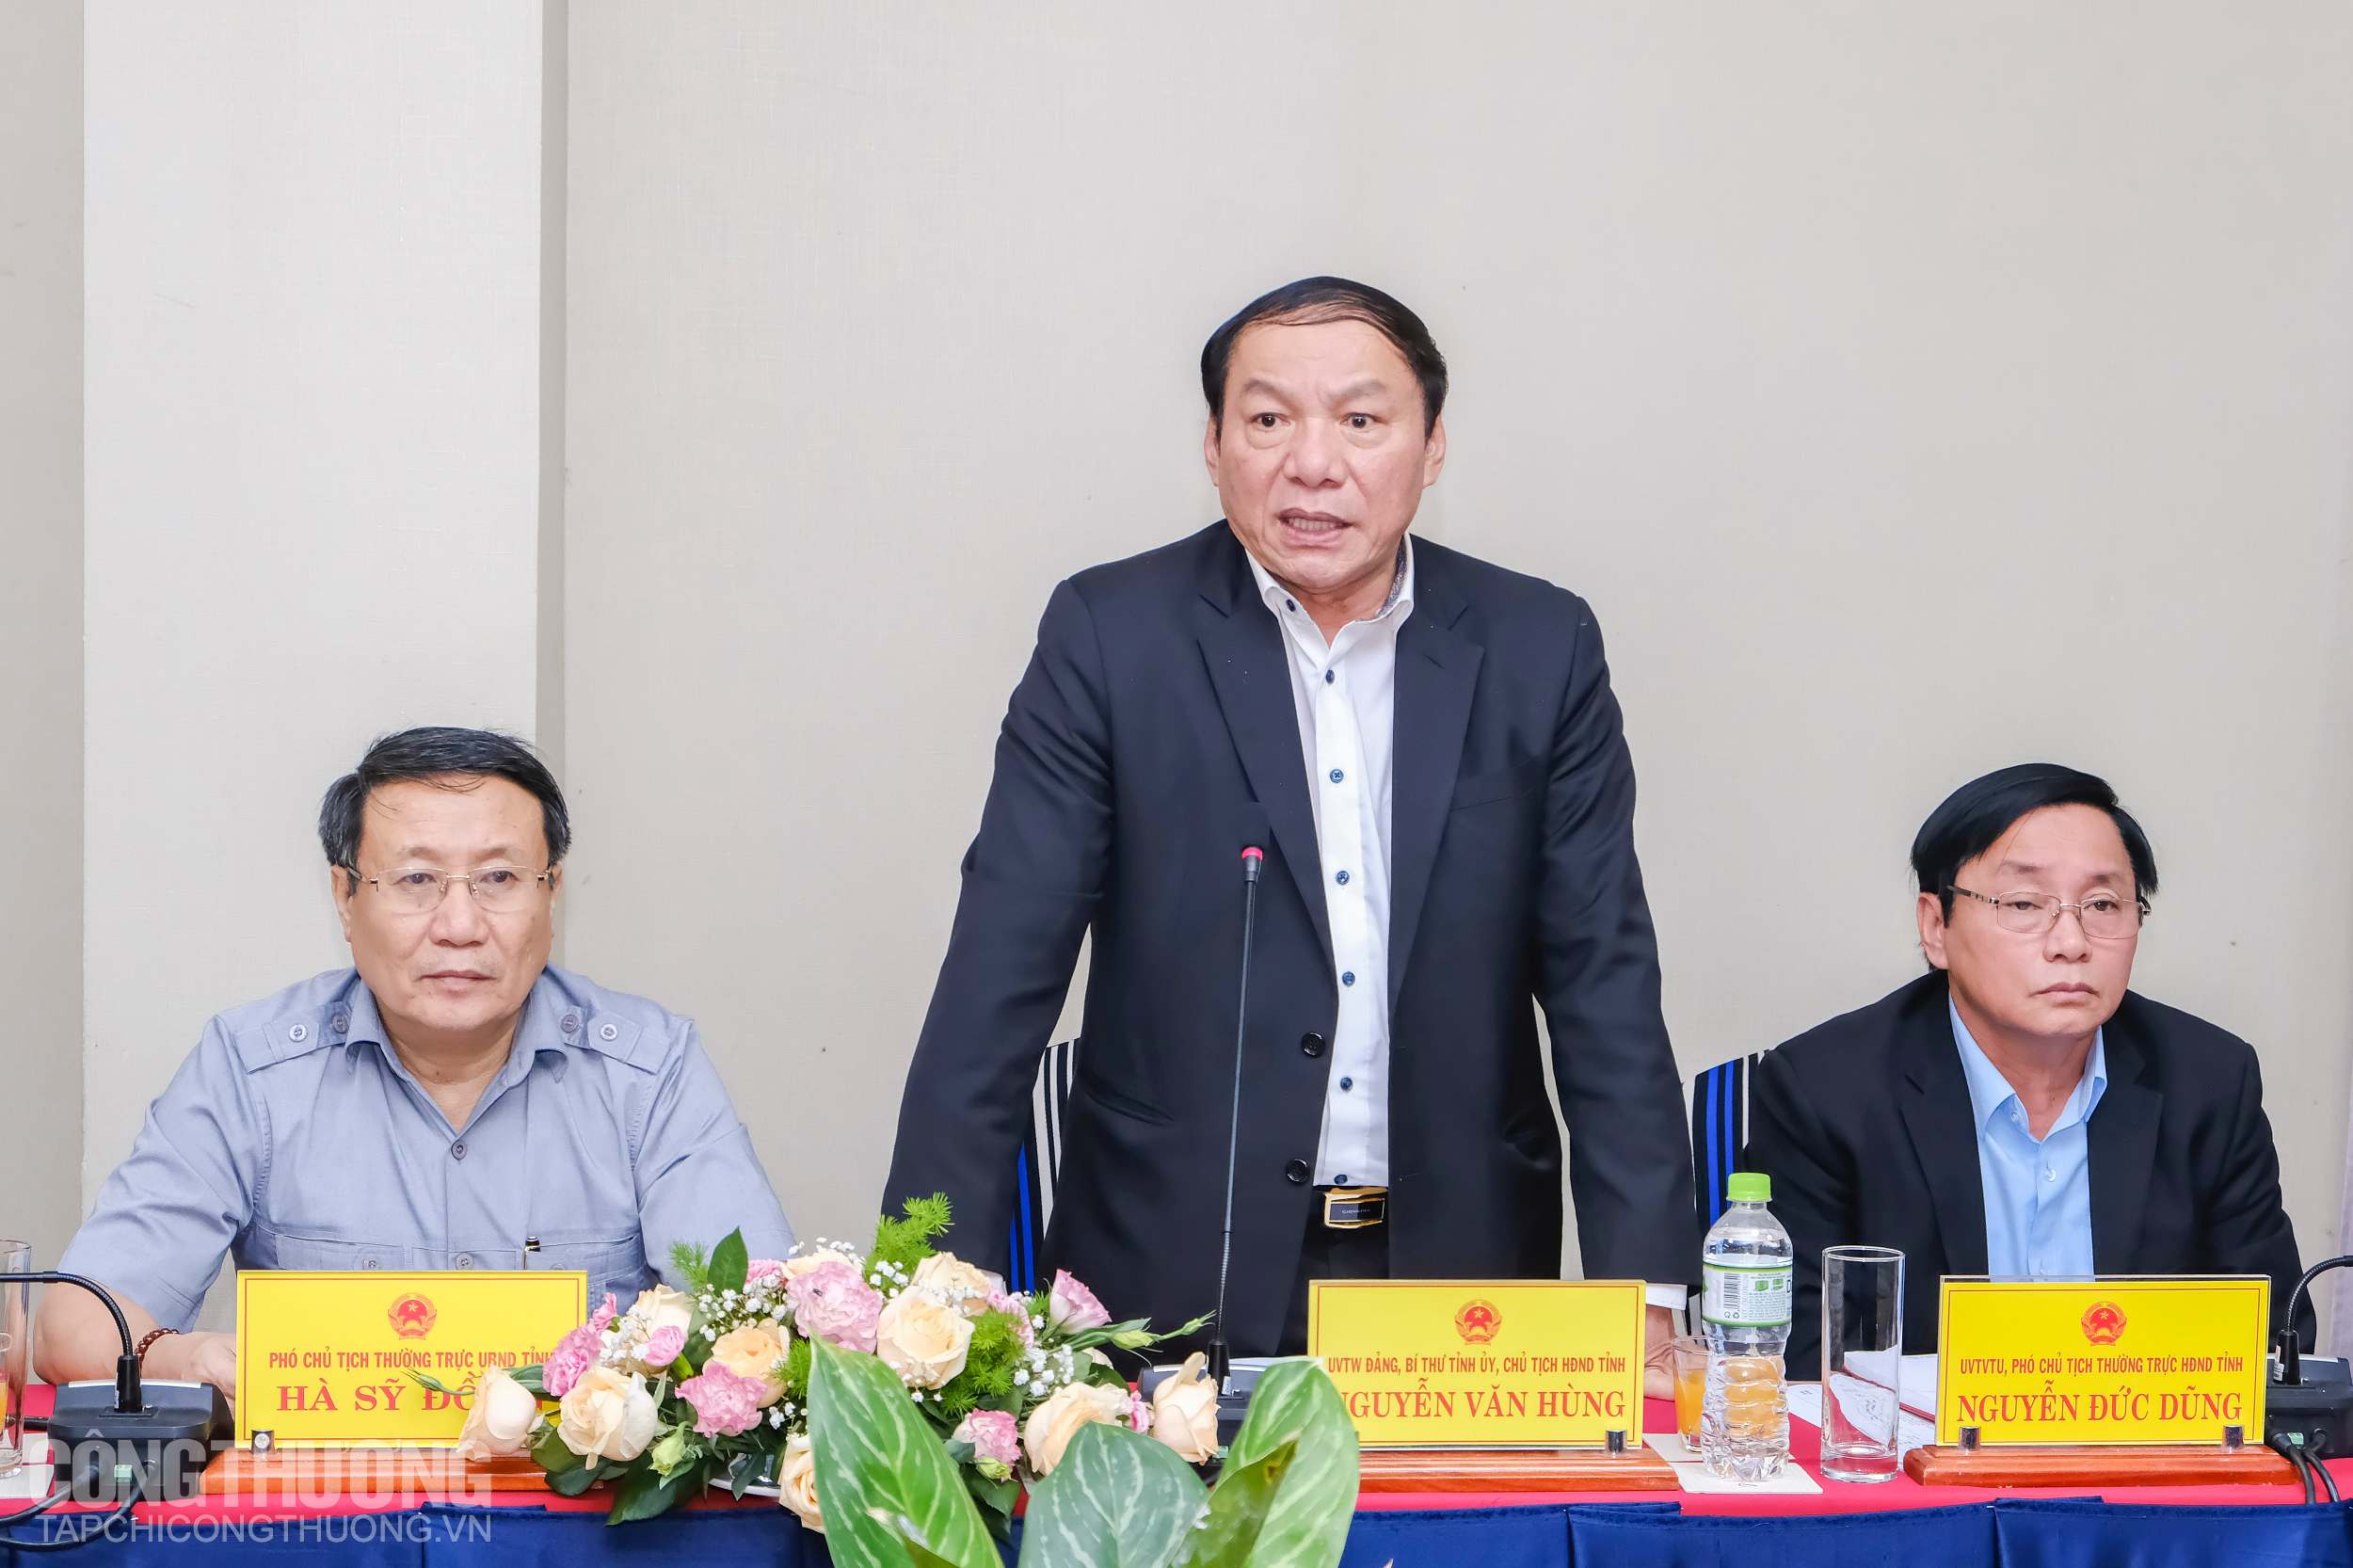 Bí thư Tỉnh ủy tỉnh Quảng Trị Nguyễn Văn Hùng chia sẻ về những tiềm năng về năng lượng sạch của tỉnh